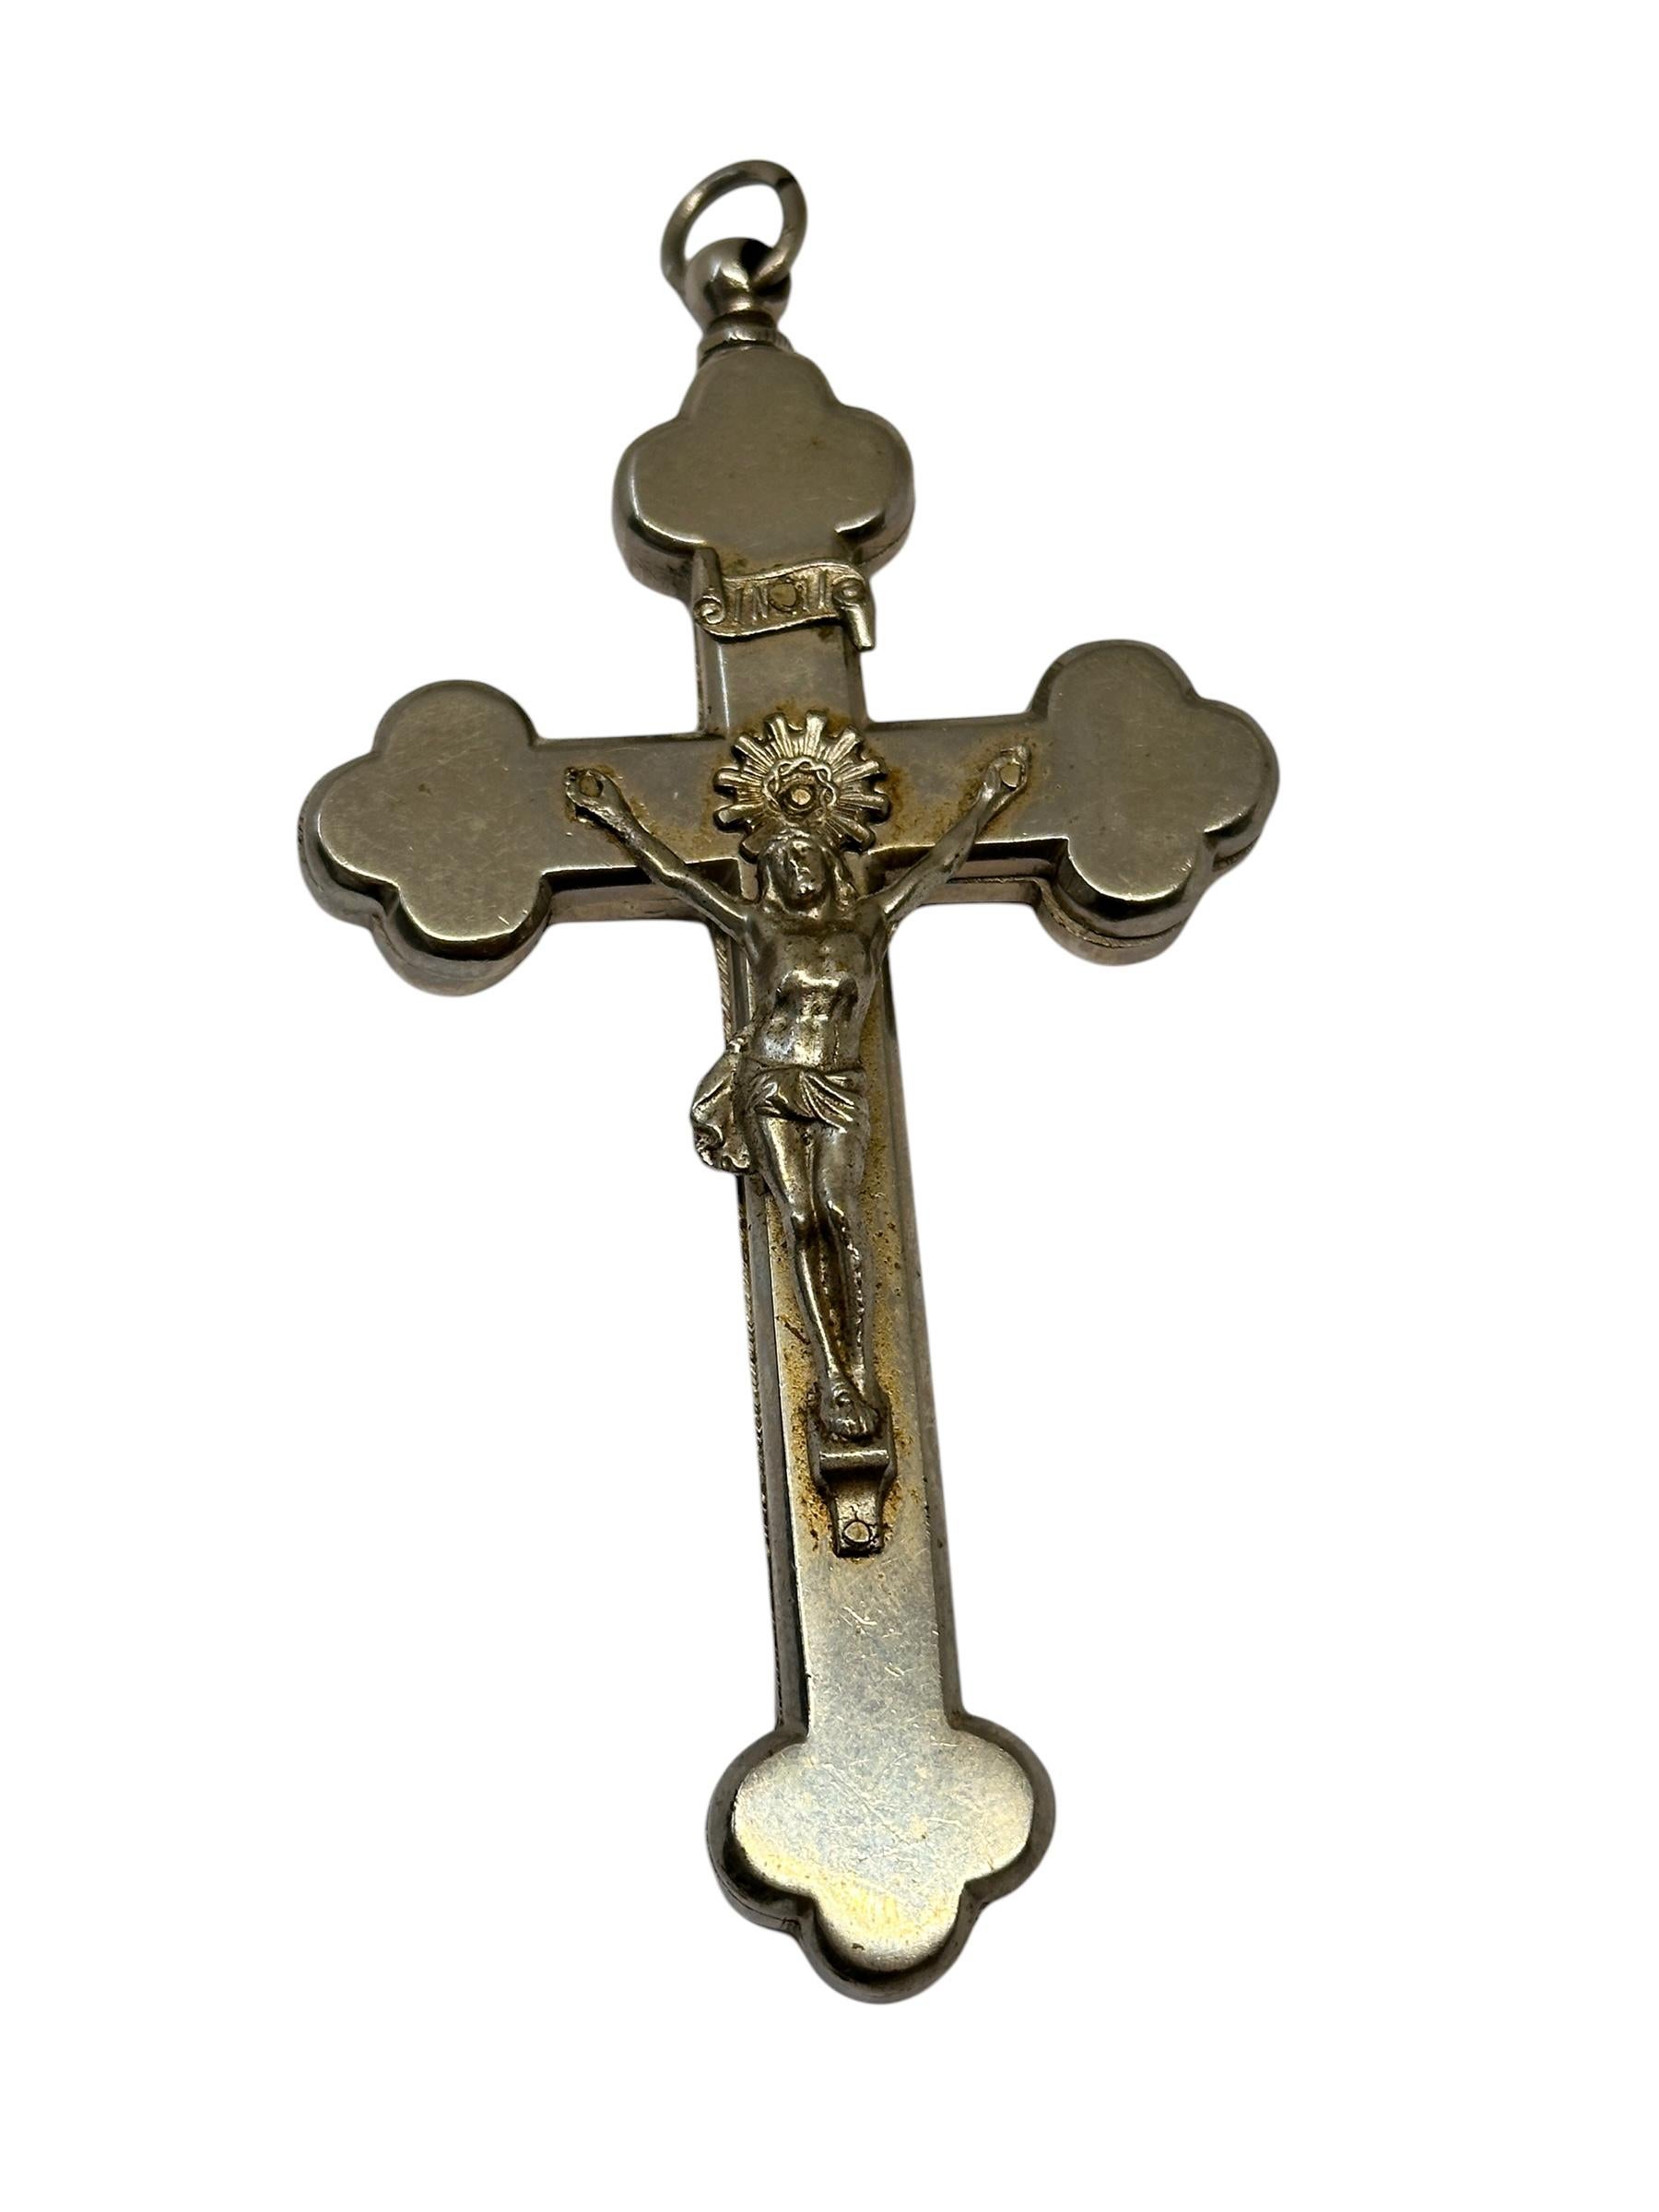 Austrian Large Antique Catholic Reliquary Box Crucifix Pendant with Six Relics of Saints For Sale